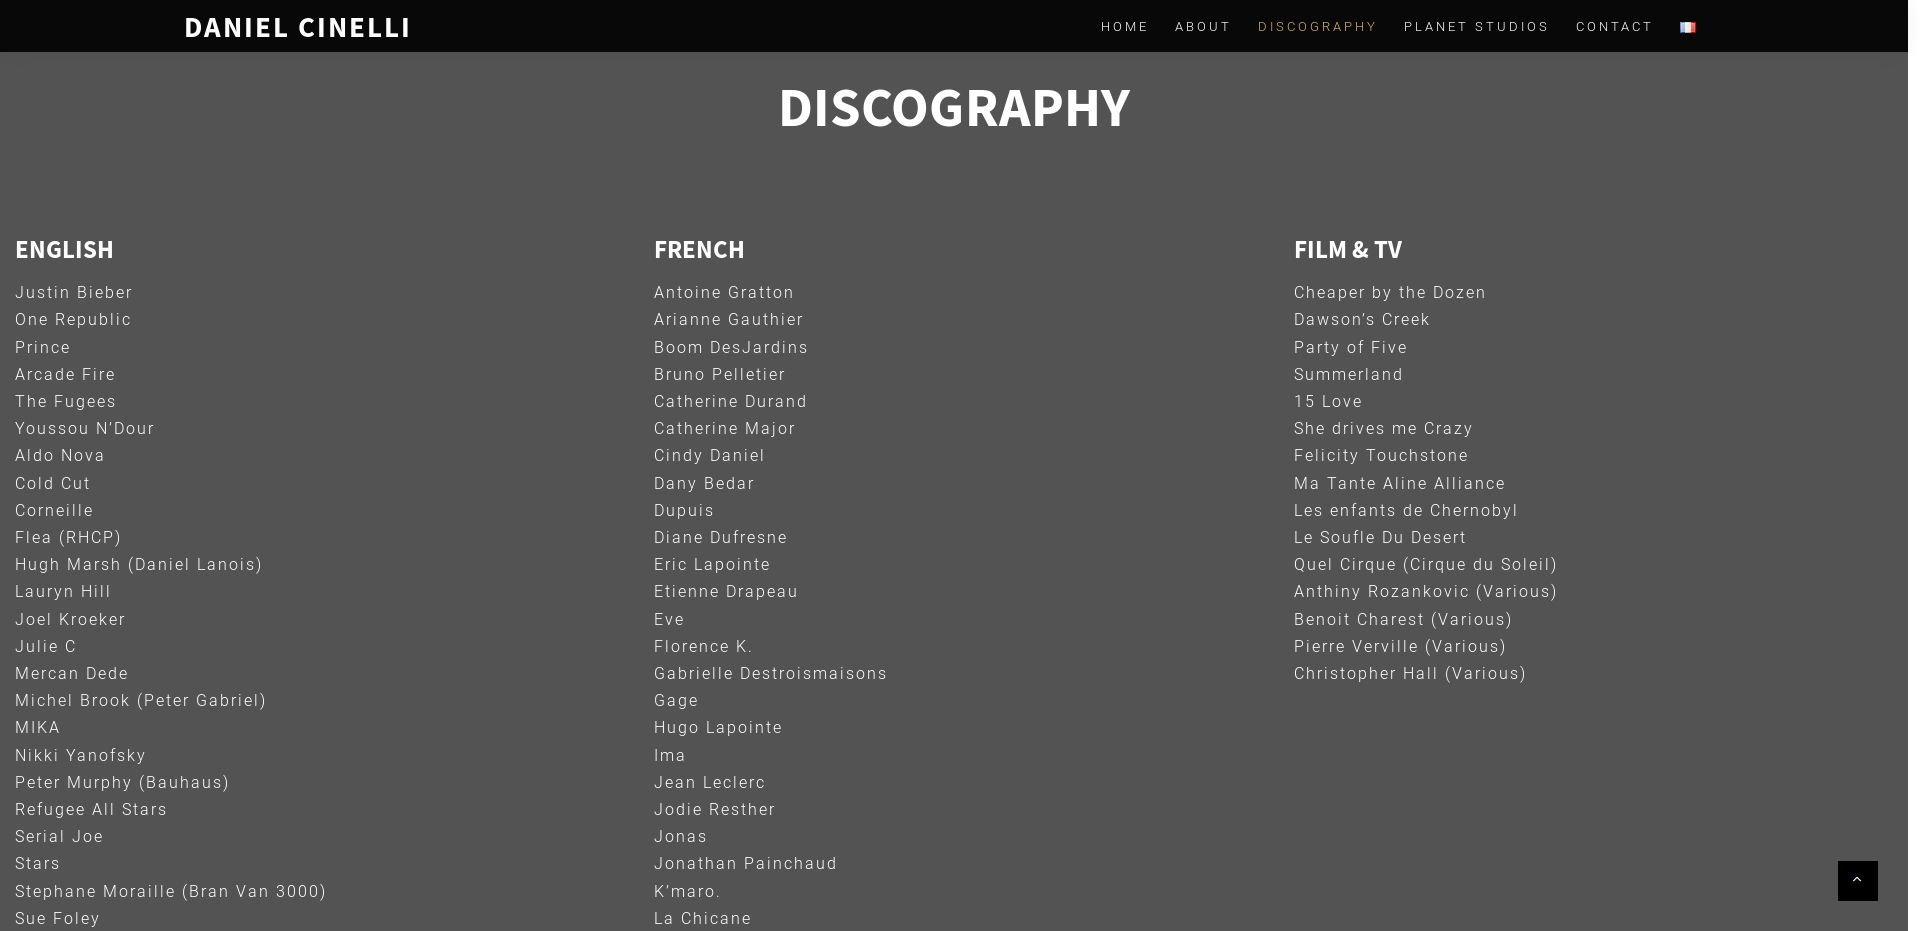 Discographie, DanielCinelli.com